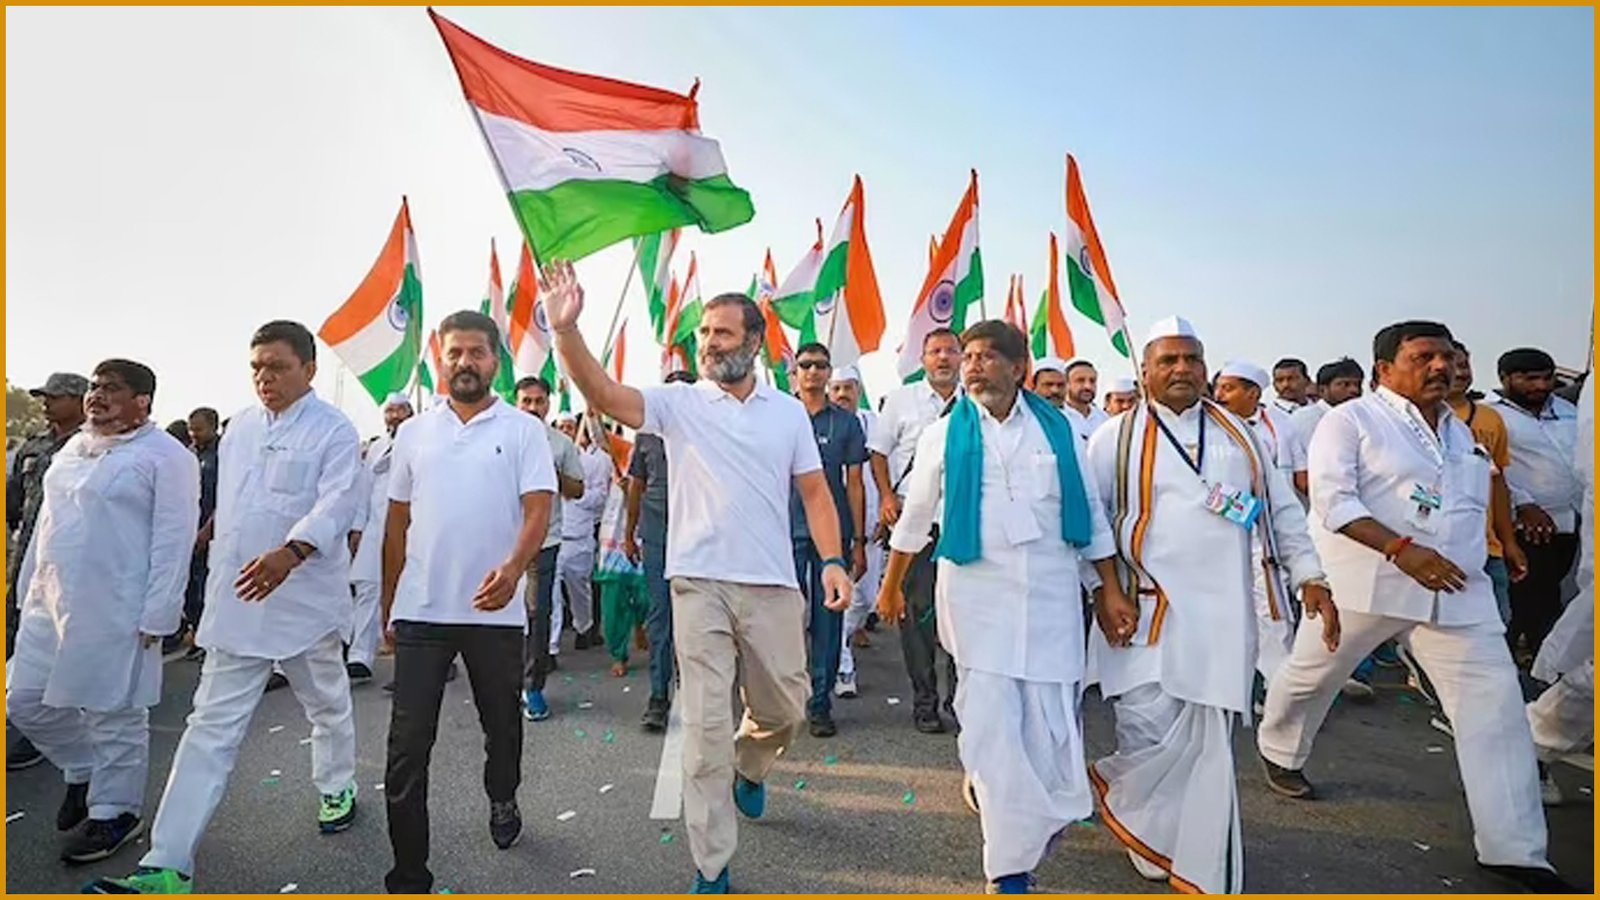 भारत जोड़ो यात्रा:राजनेता, मिशन और सन्देश, क्या वाकई राहुल गाँधी की भारत जोड़ो यात्रा कामयाब रही? Is Rahul Gandhi’s Bharat Jodo Yatra really successful?